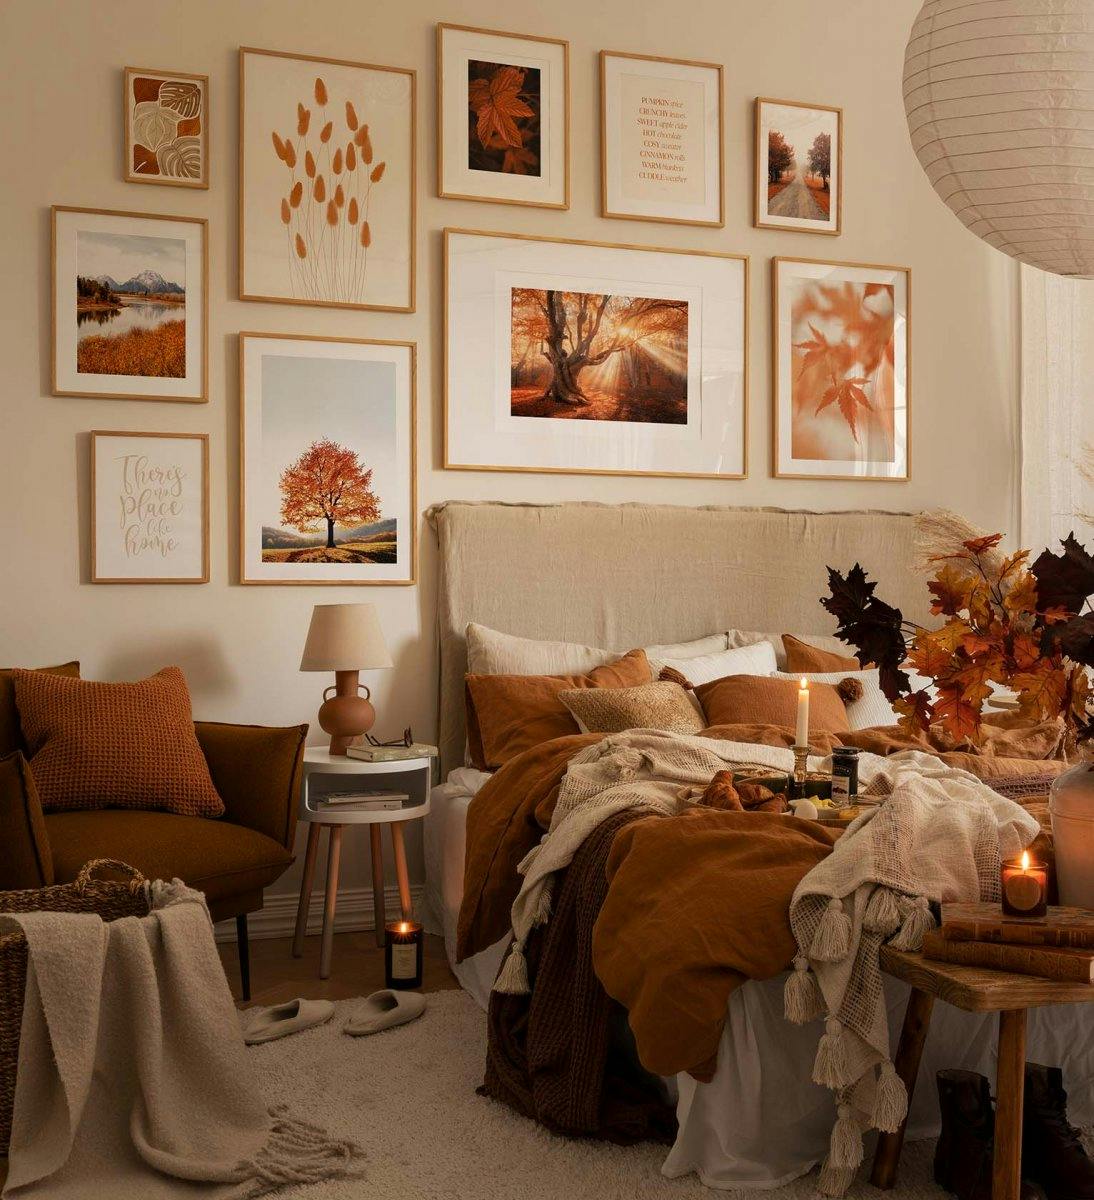 침실용 오렌지 및 오크 프레임의 지문과 사진으로 가을에서 영감을 받은 갤러리 벽